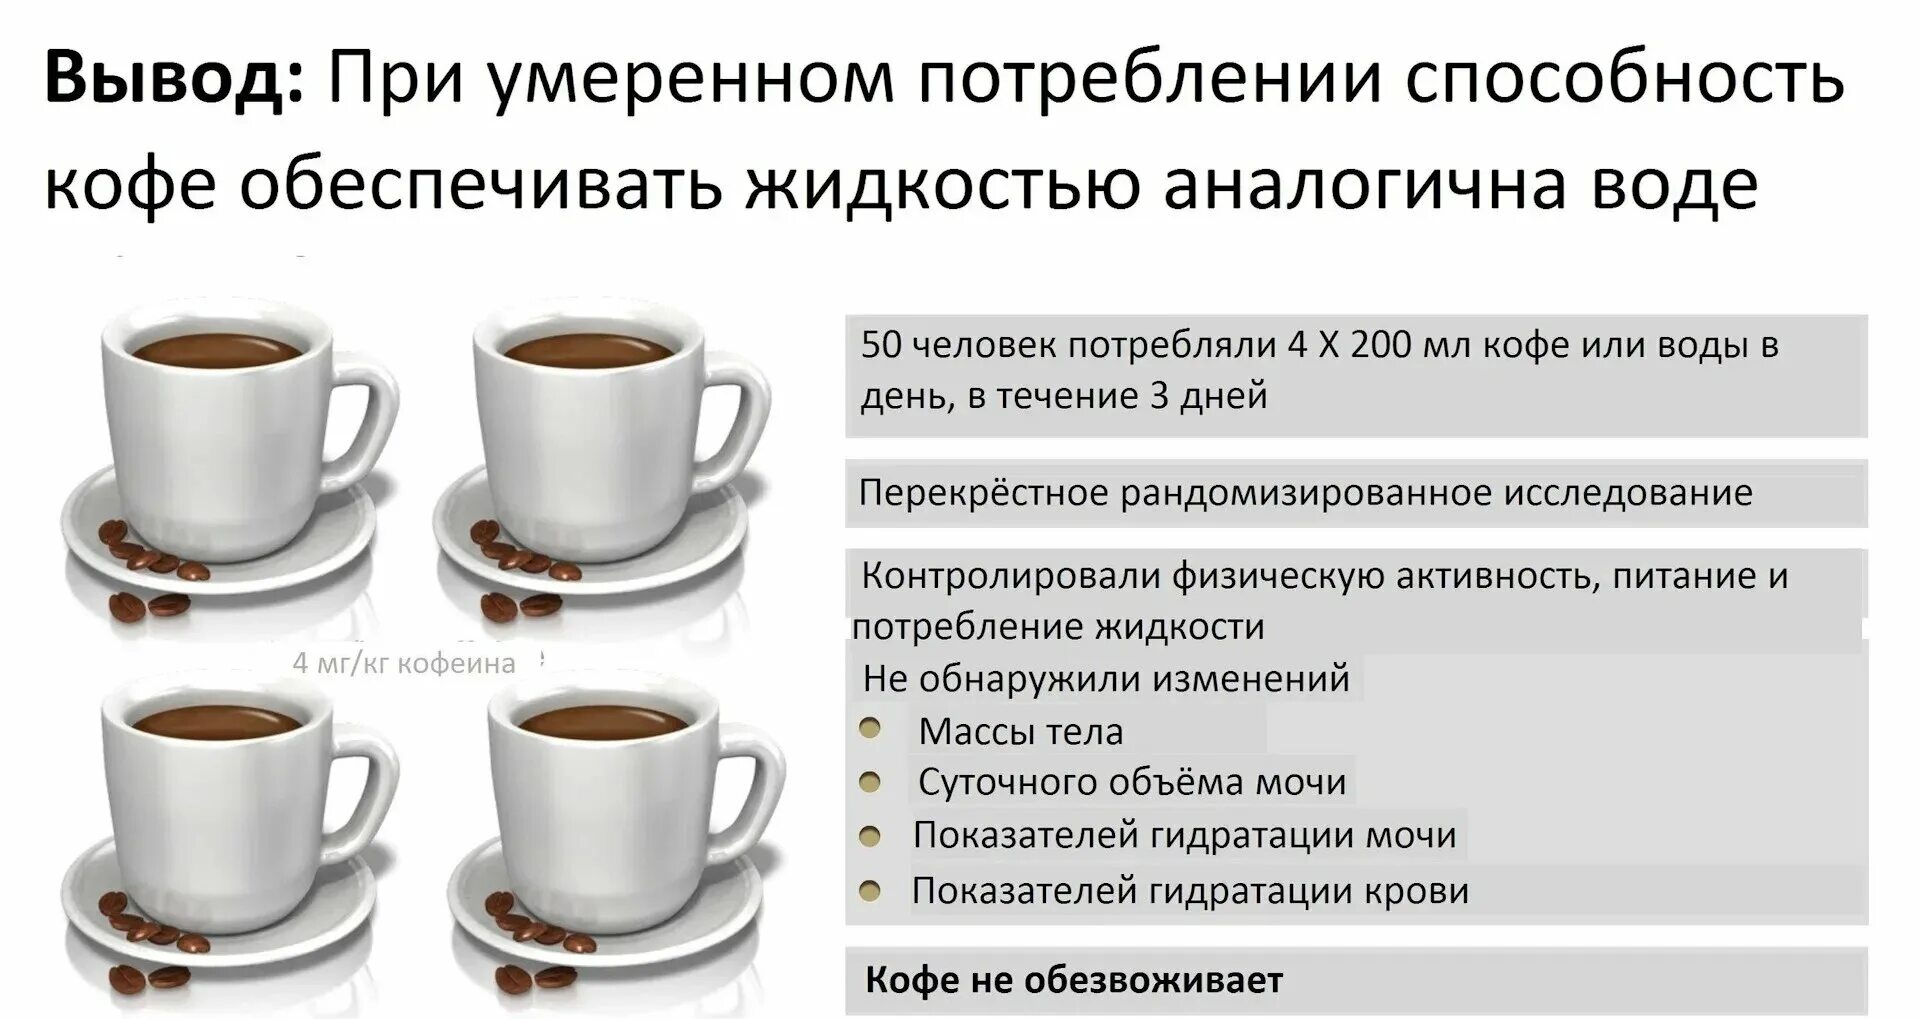 С скольки лет можно пить кофе. Гидратация кофе. Кофе обезвоживает. Вывод о кофе. Кофе задерживает жидкость или выводит.